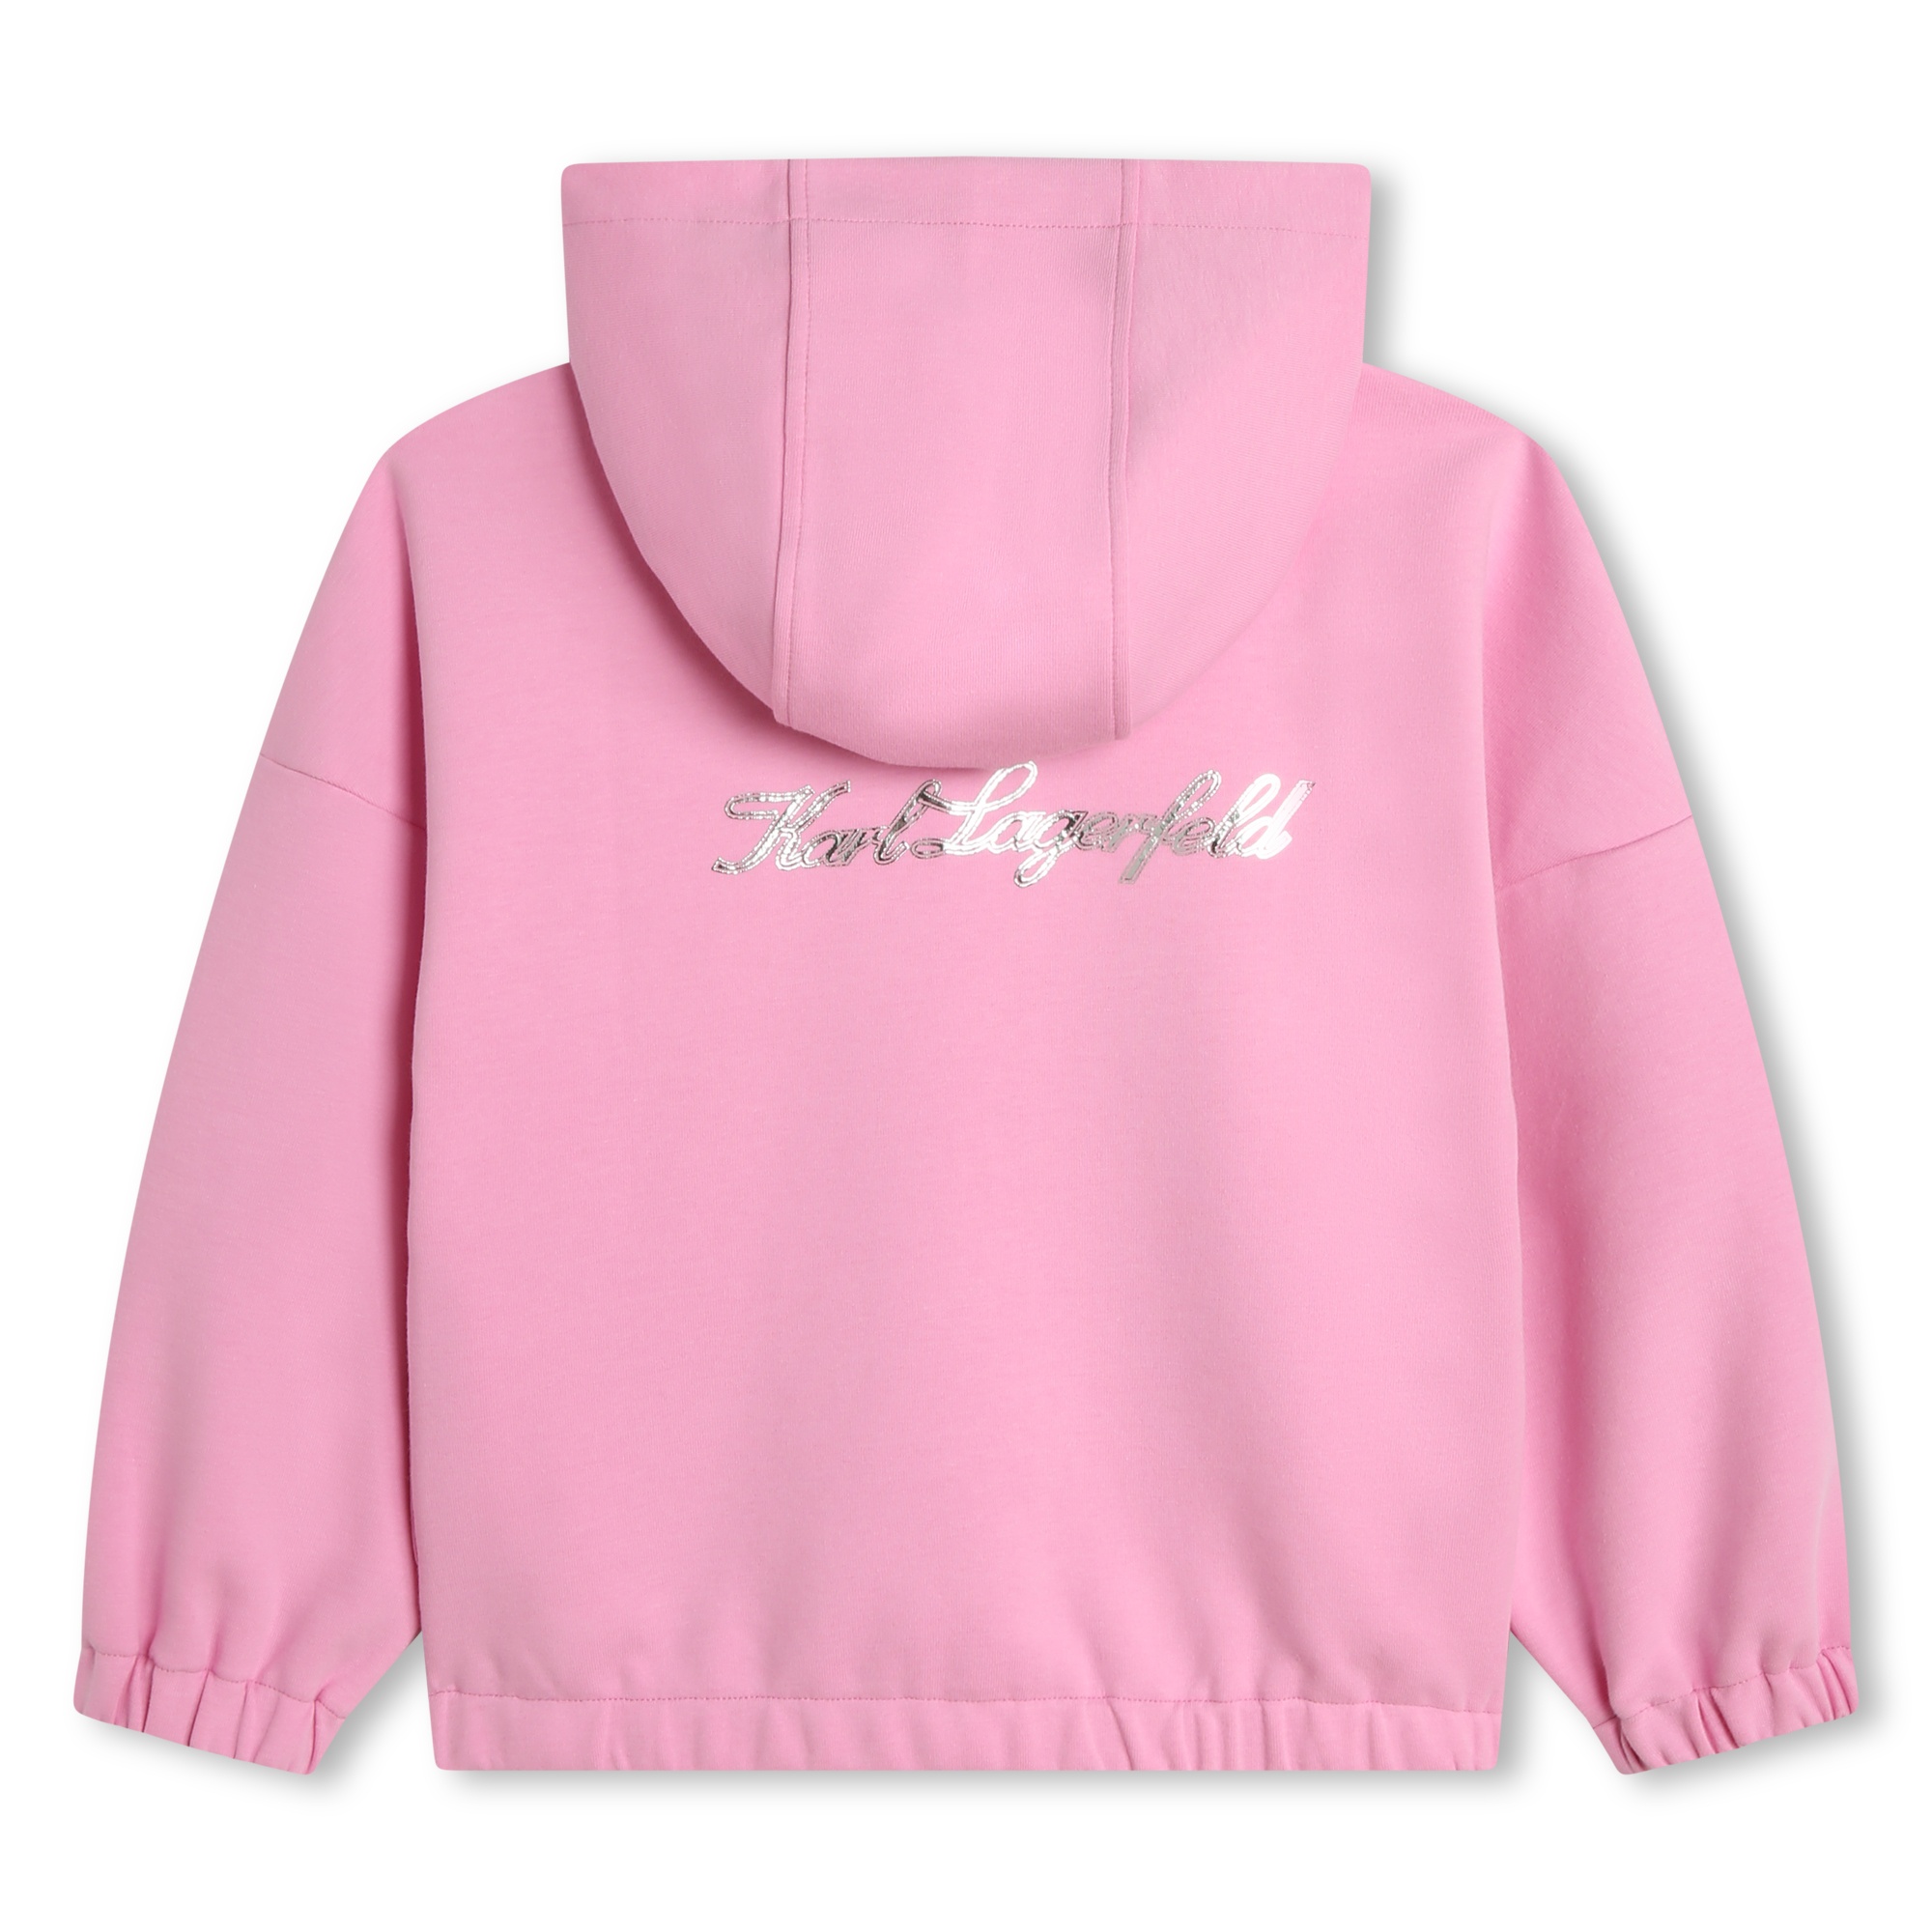 Zip-up hooded sweatshirt KARL LAGERFELD KIDS for GIRL